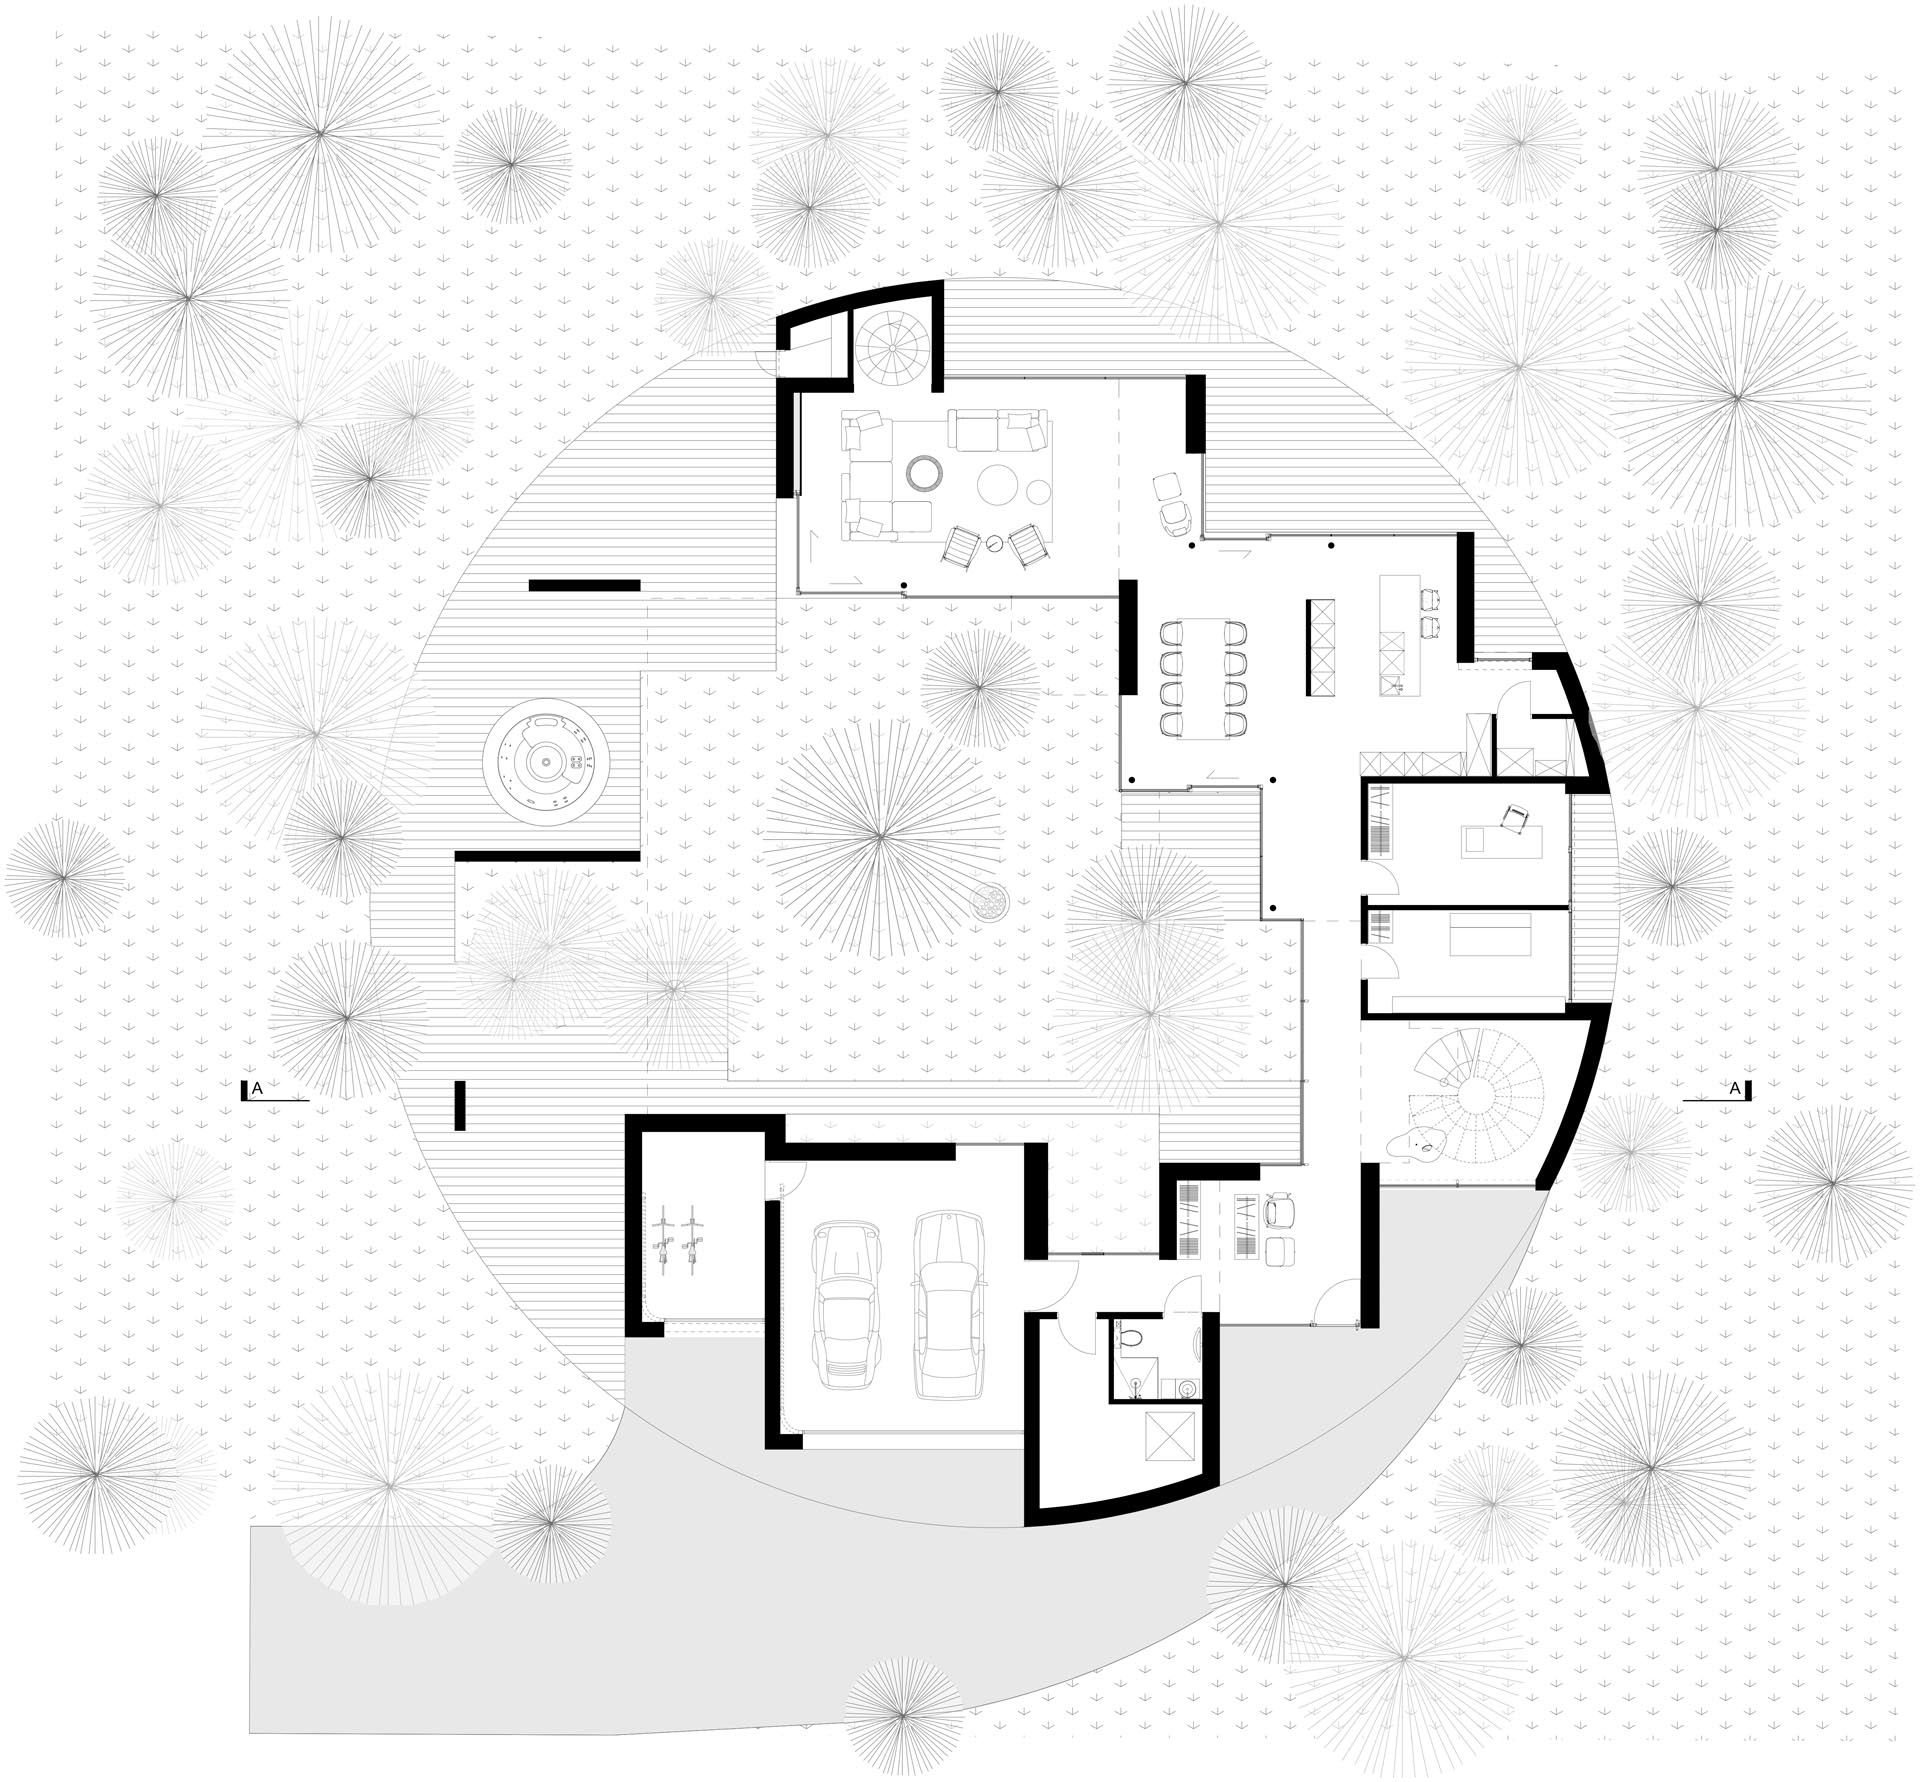 The floor plan of a circular home.